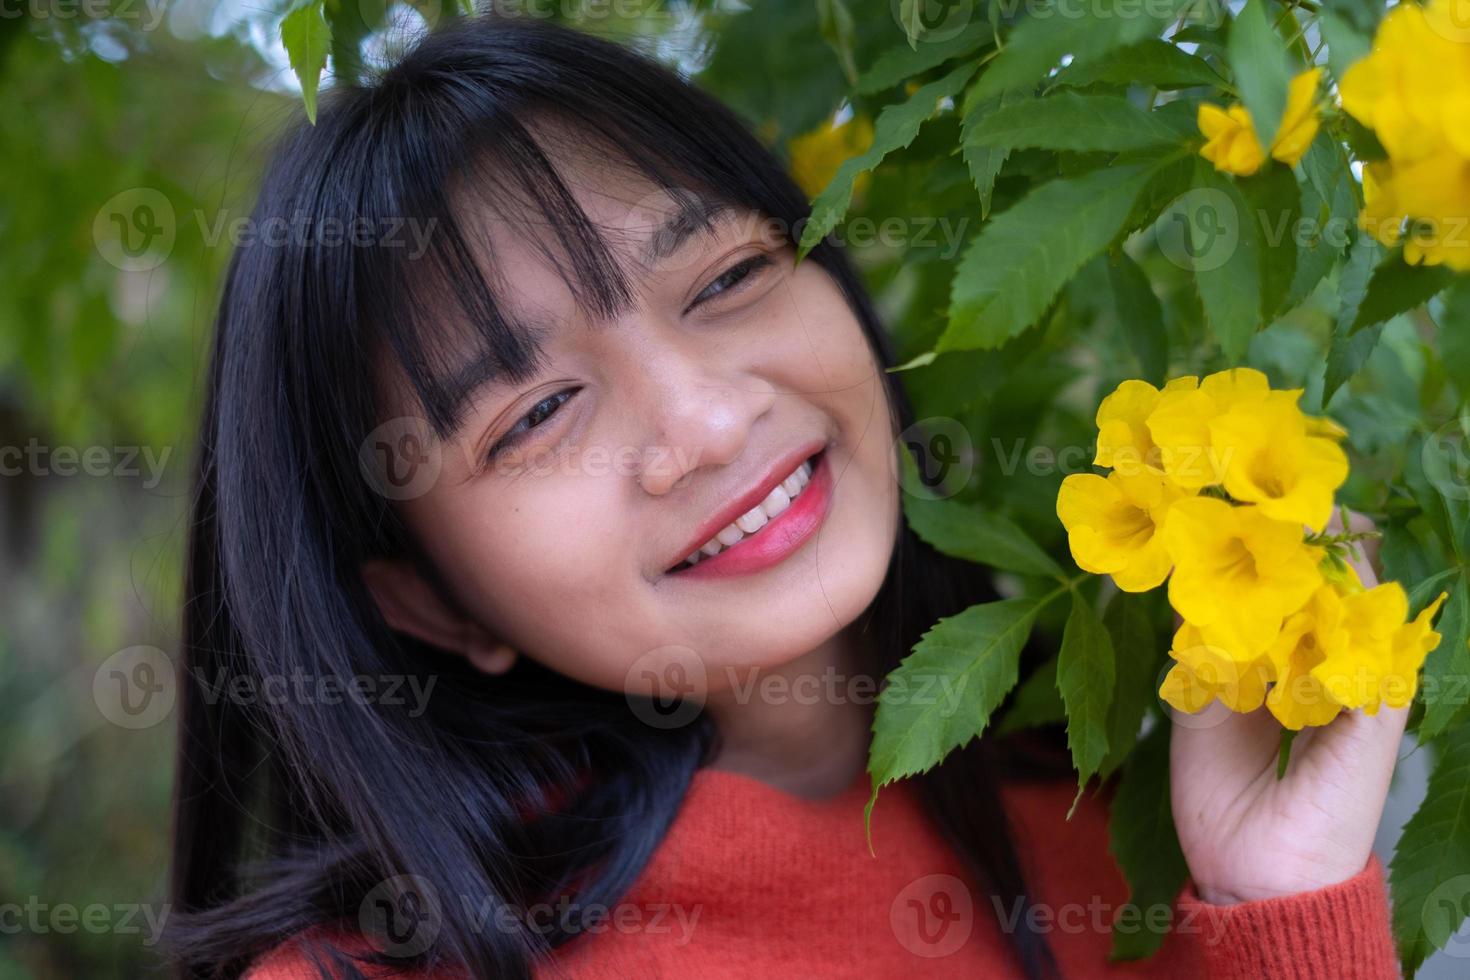 portret jong meisje met gele bloemen, Aziatisch meisje. foto